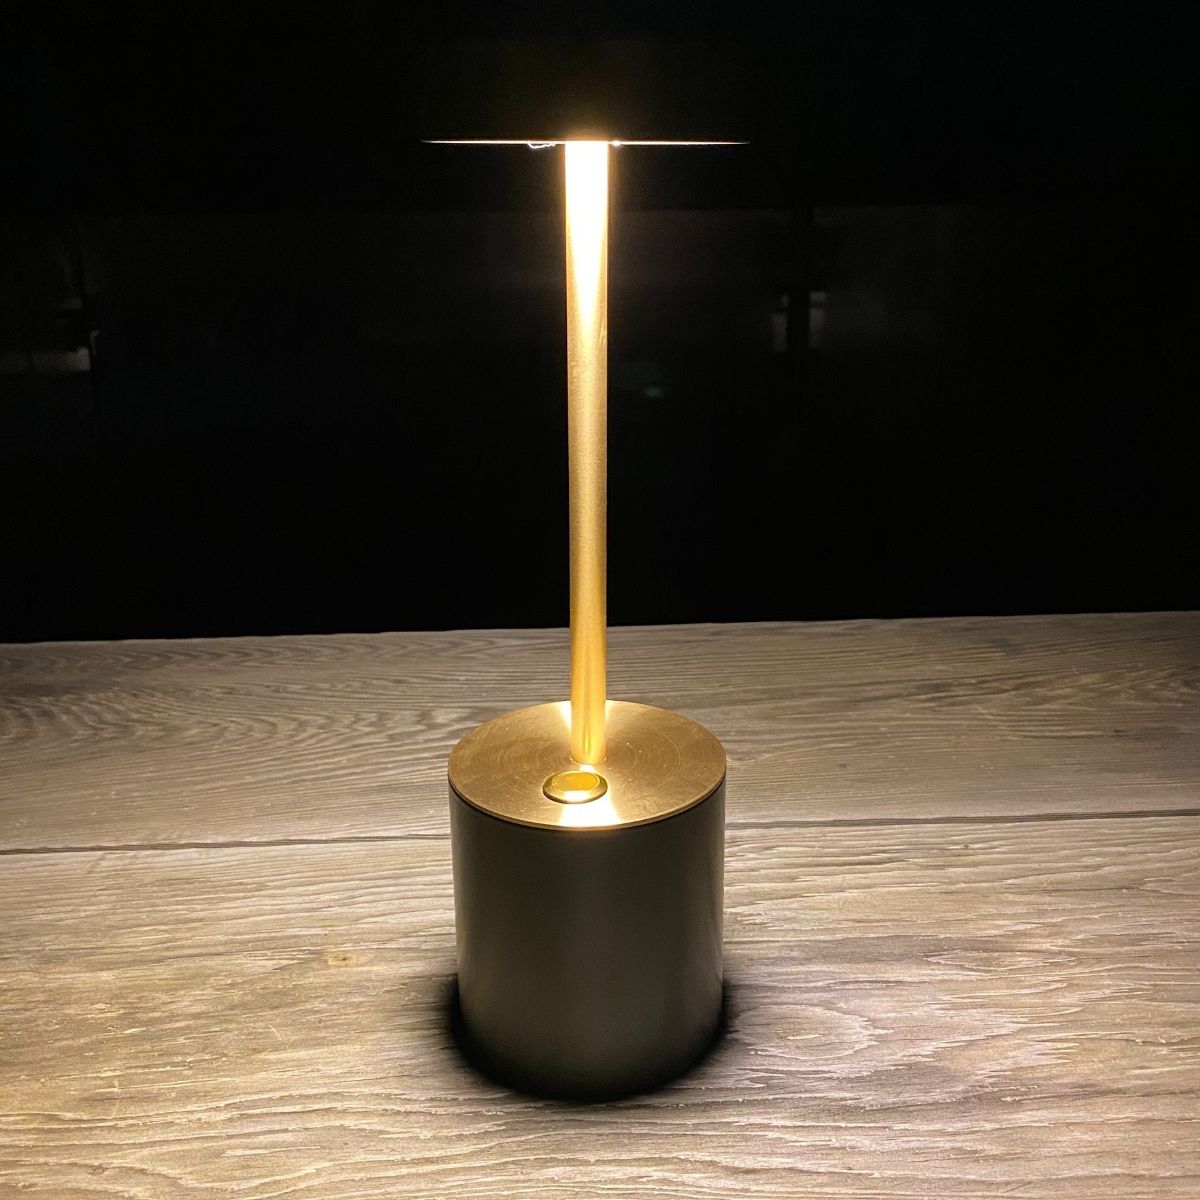 En genopladelig bordlampe fra TakeMe er perfekt til et hus, hvor man har brug for at kunne flytte lyset med sig rundt. Om det er ved spisebordet, hvor de giver optimalt lys med mulighed for 3 forskellige lysstyrker.